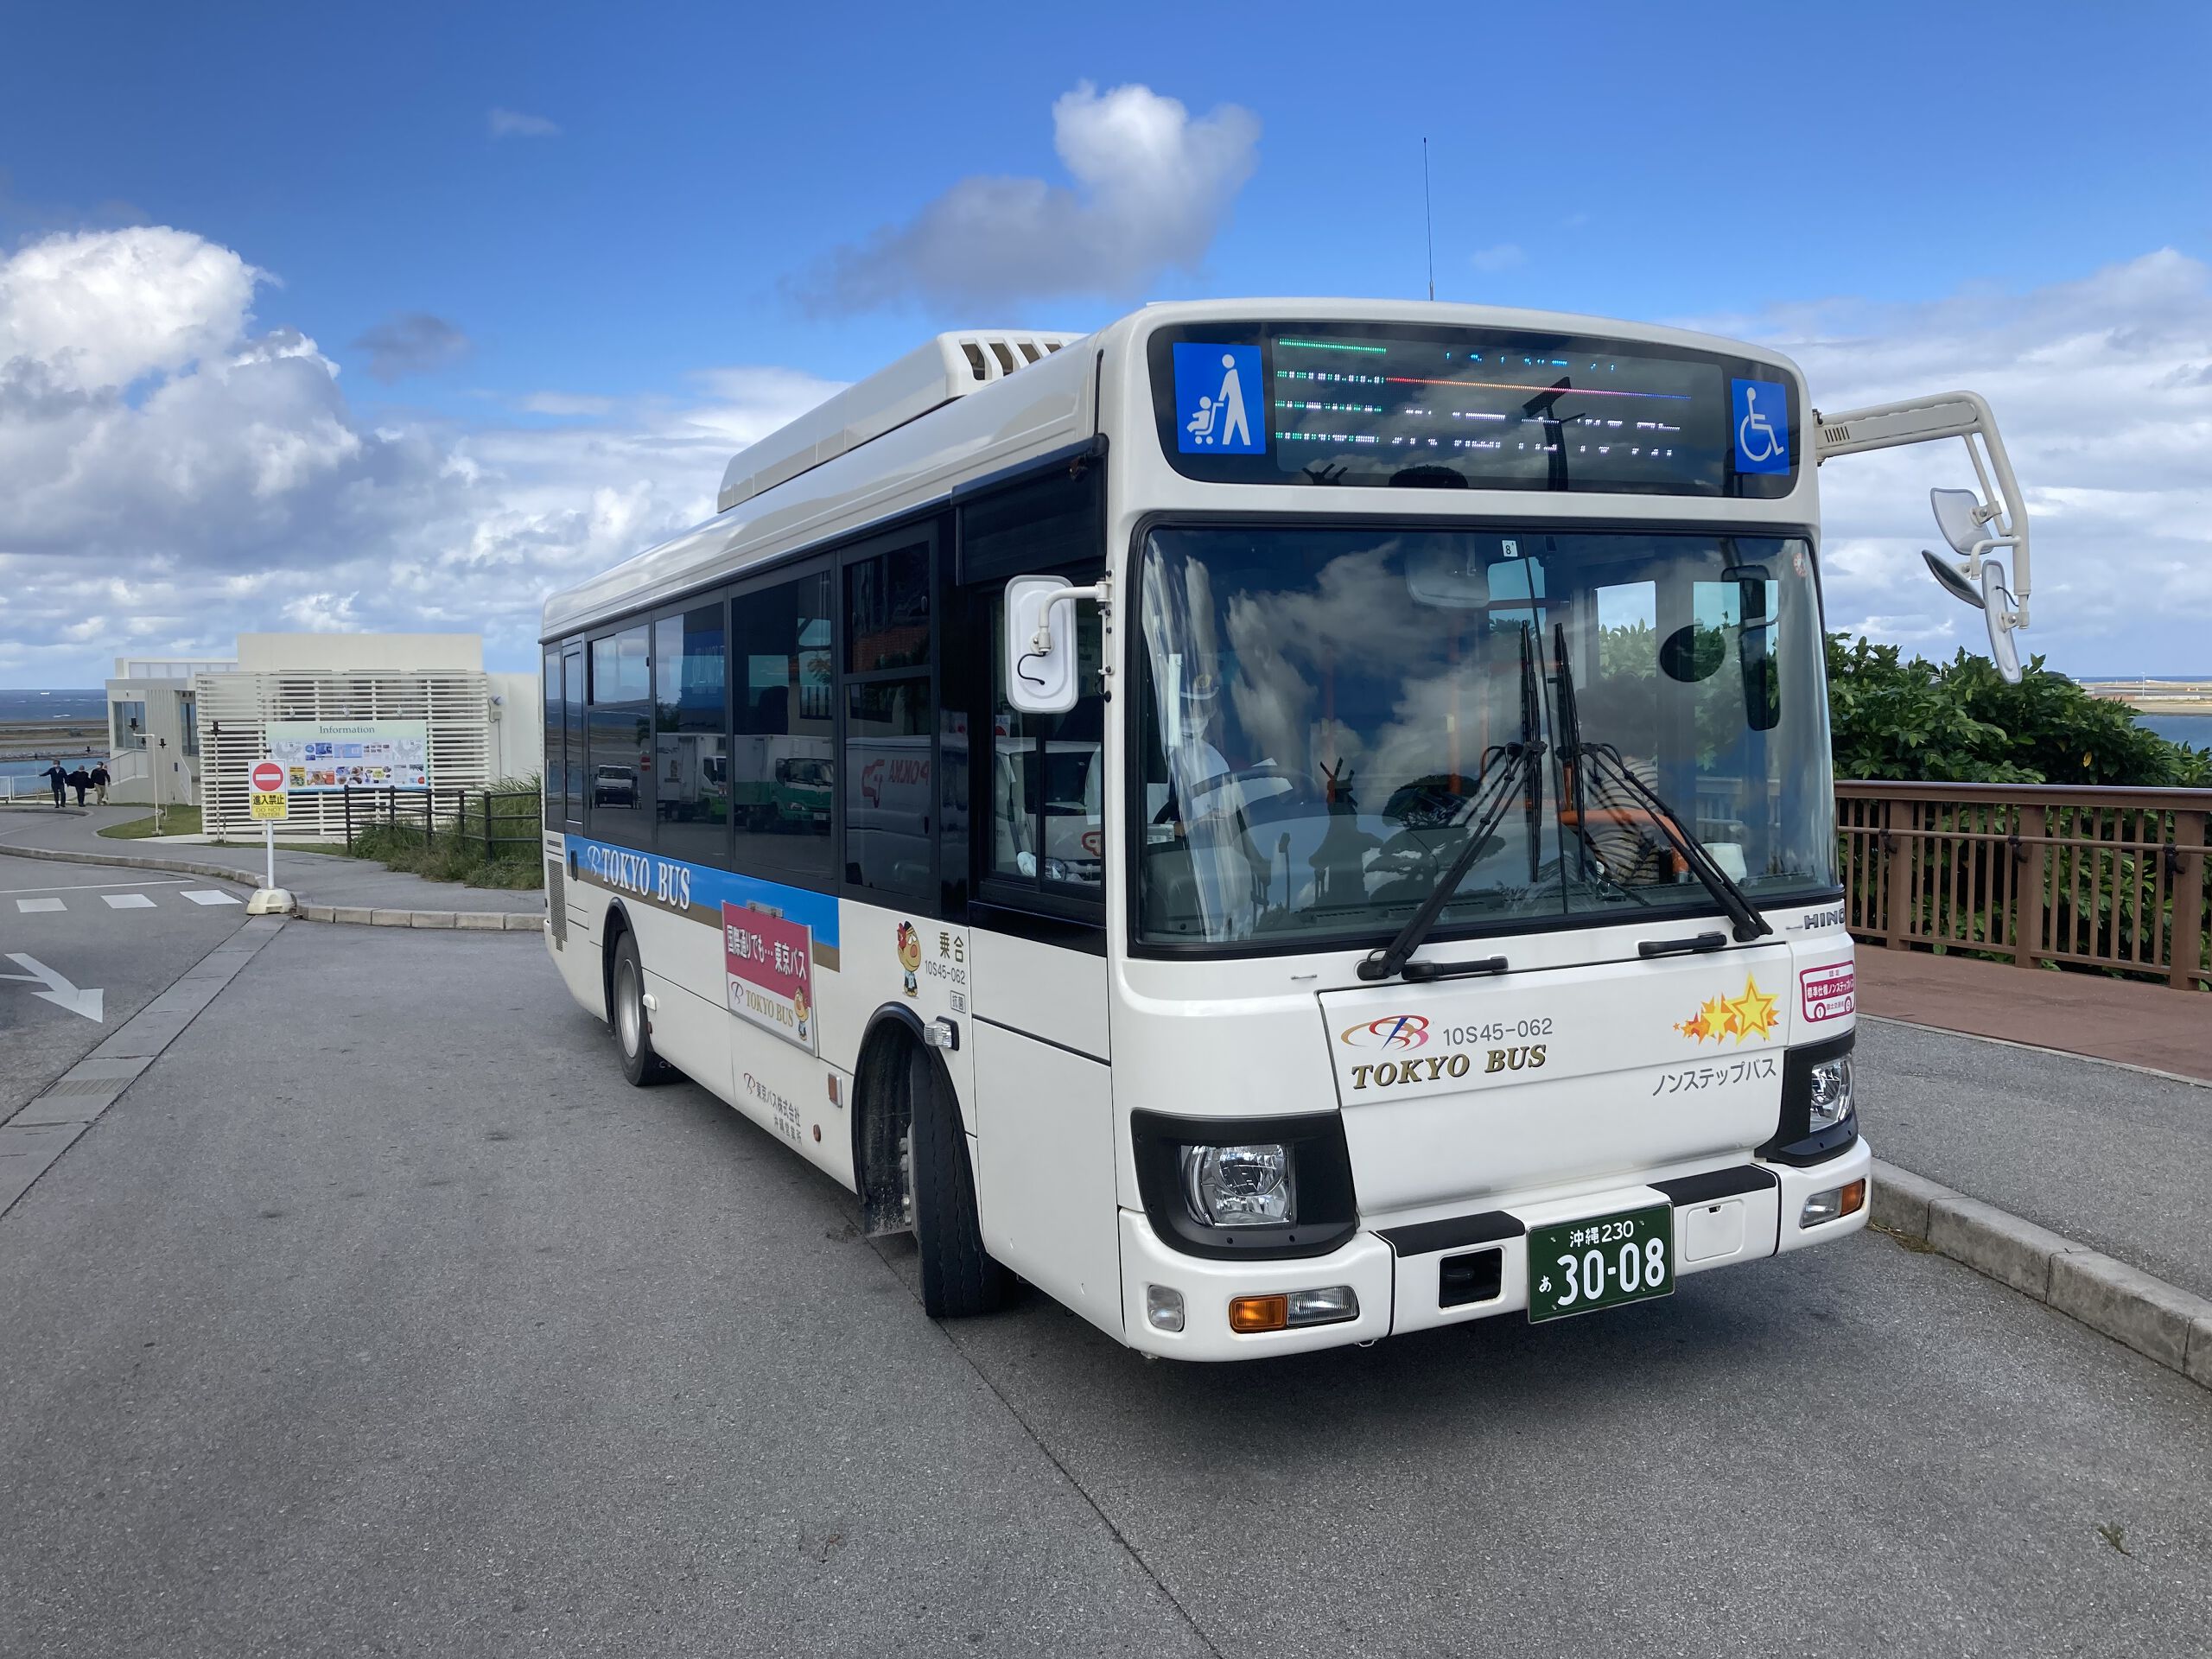 OKINAWA一日通票＊冲绳都市单轨电车&东京巴士